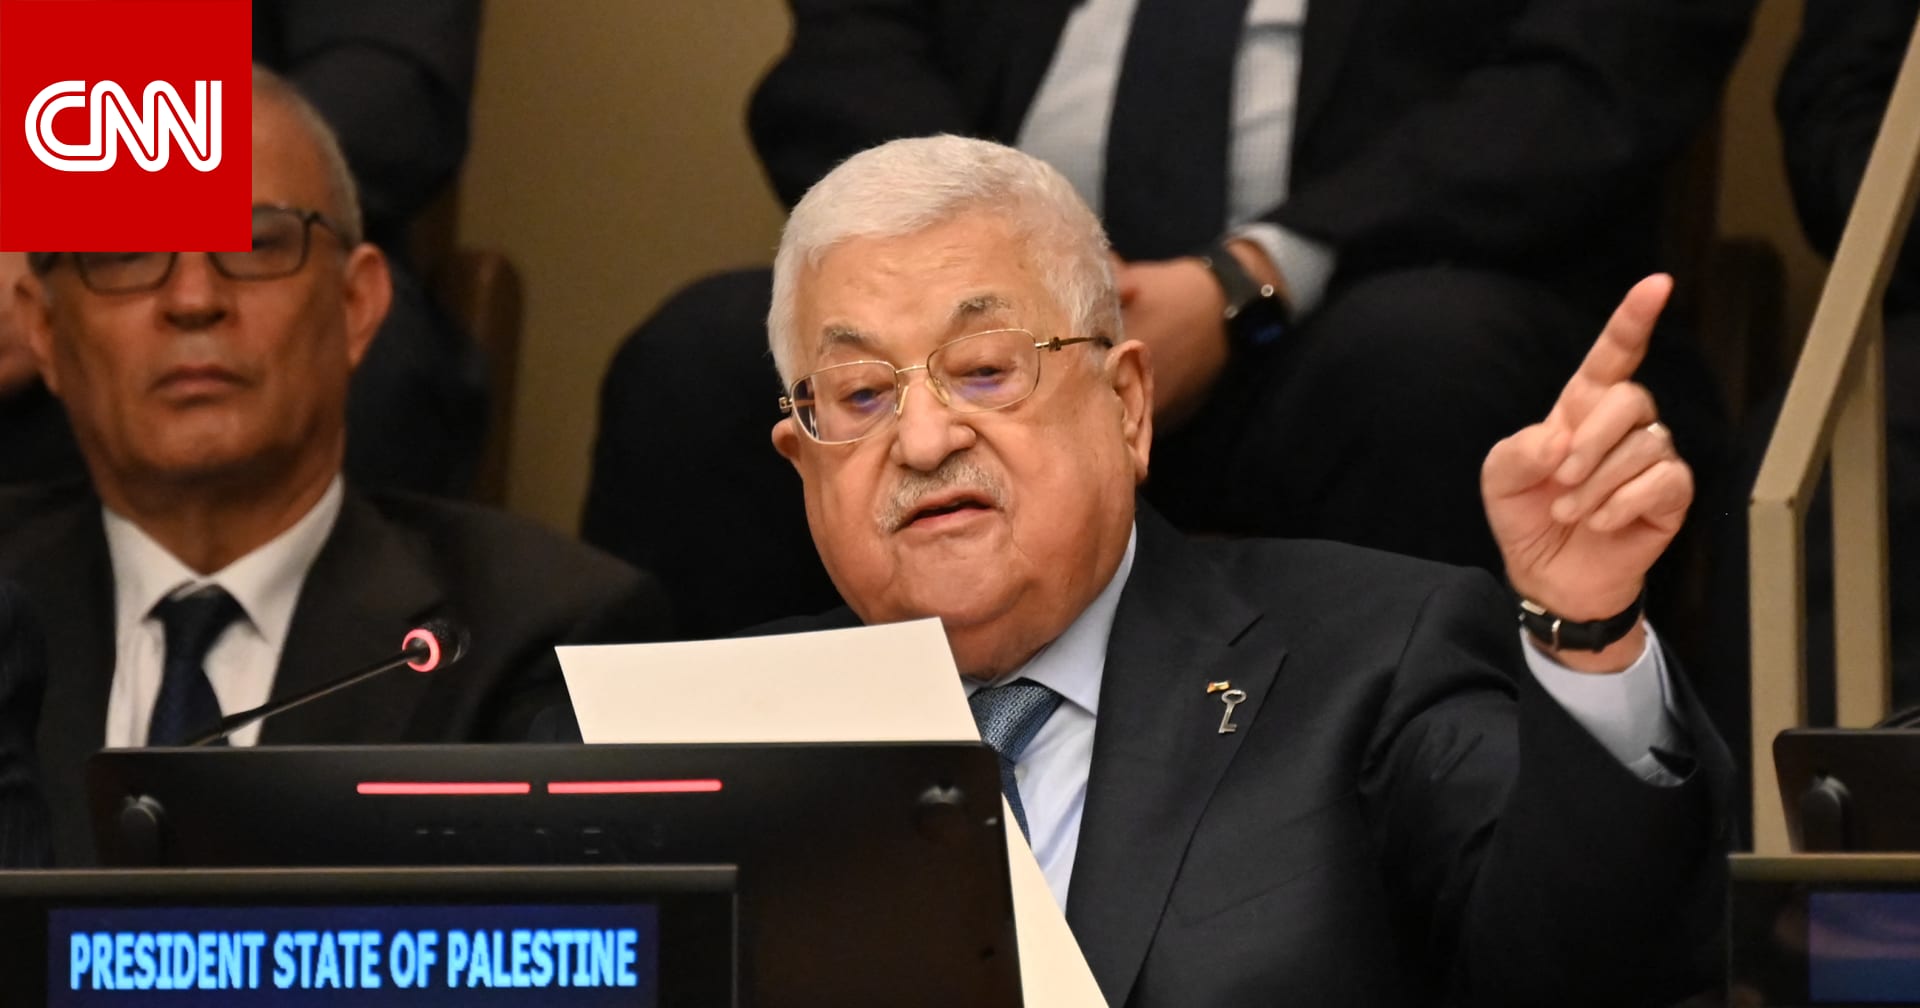 ماذا قال عباس في الأمم المتحدة عن ذكرى”النكبة” وما هو موقف إسرائيل وأمريكا؟